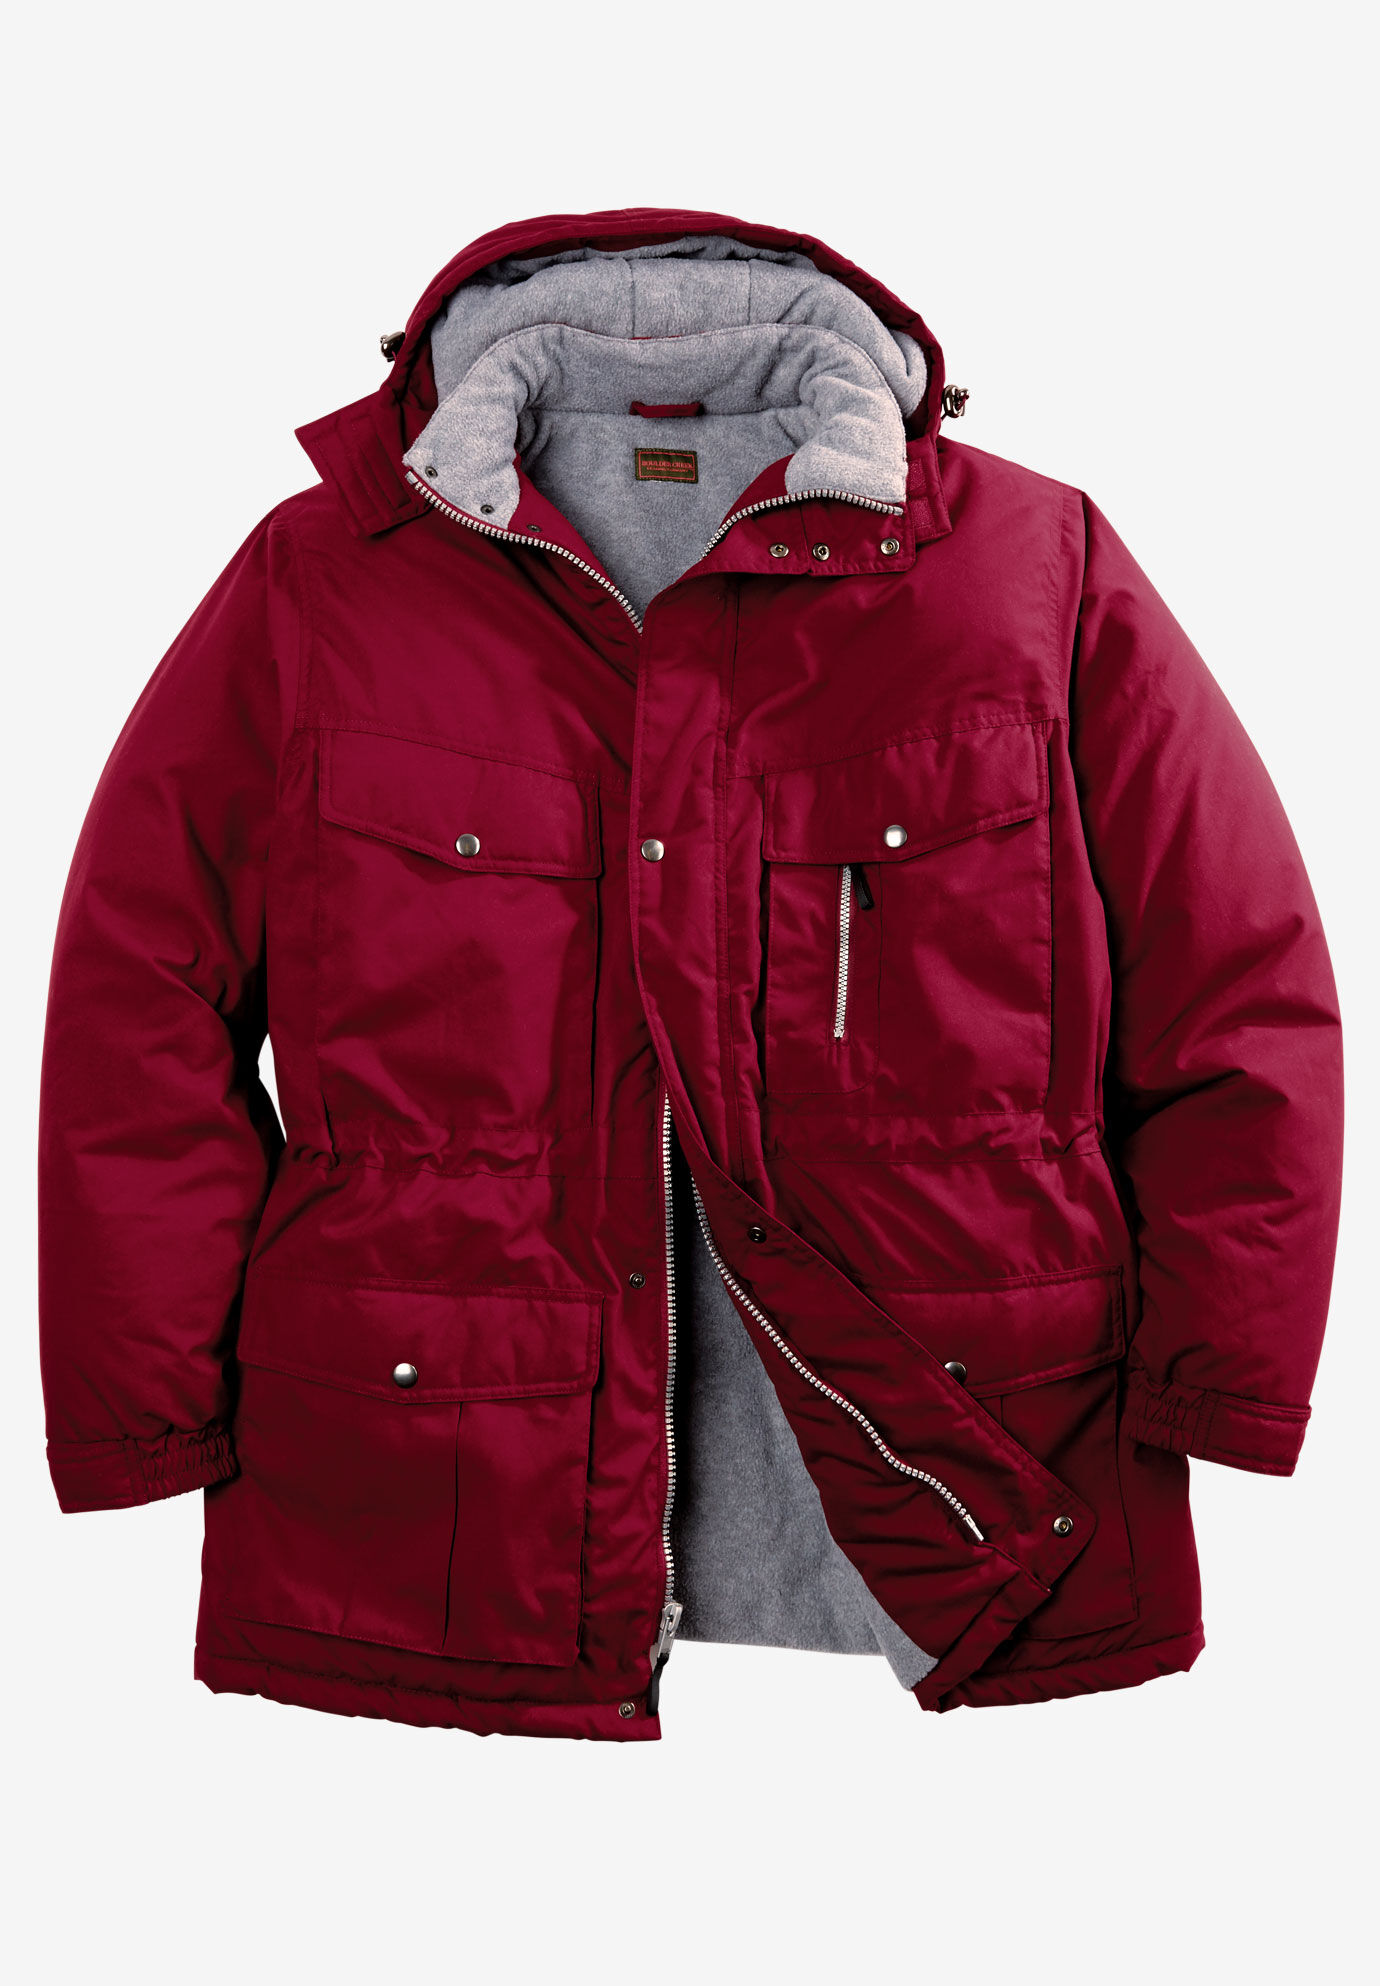 tall mens winter jacket